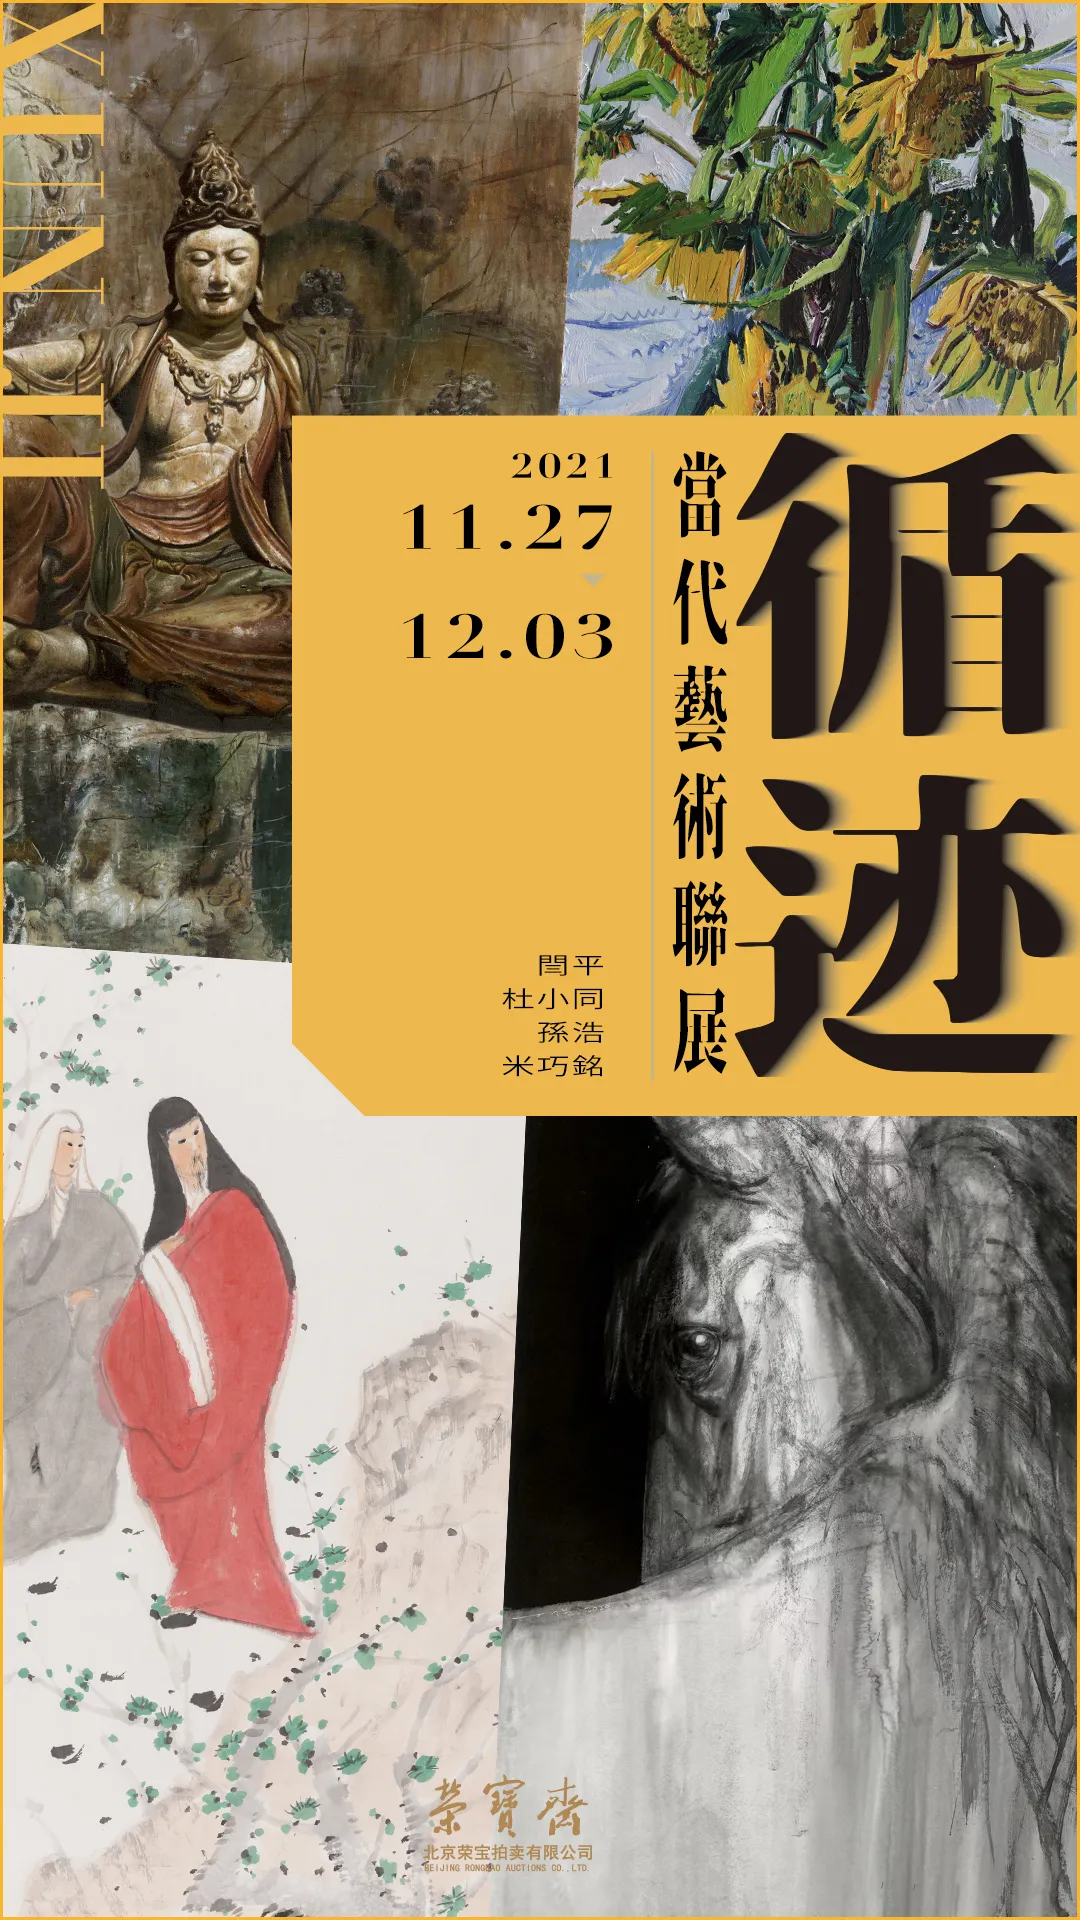 展讯 | 循迹·当代艺术联展将于11月27日在荣宝斋开展